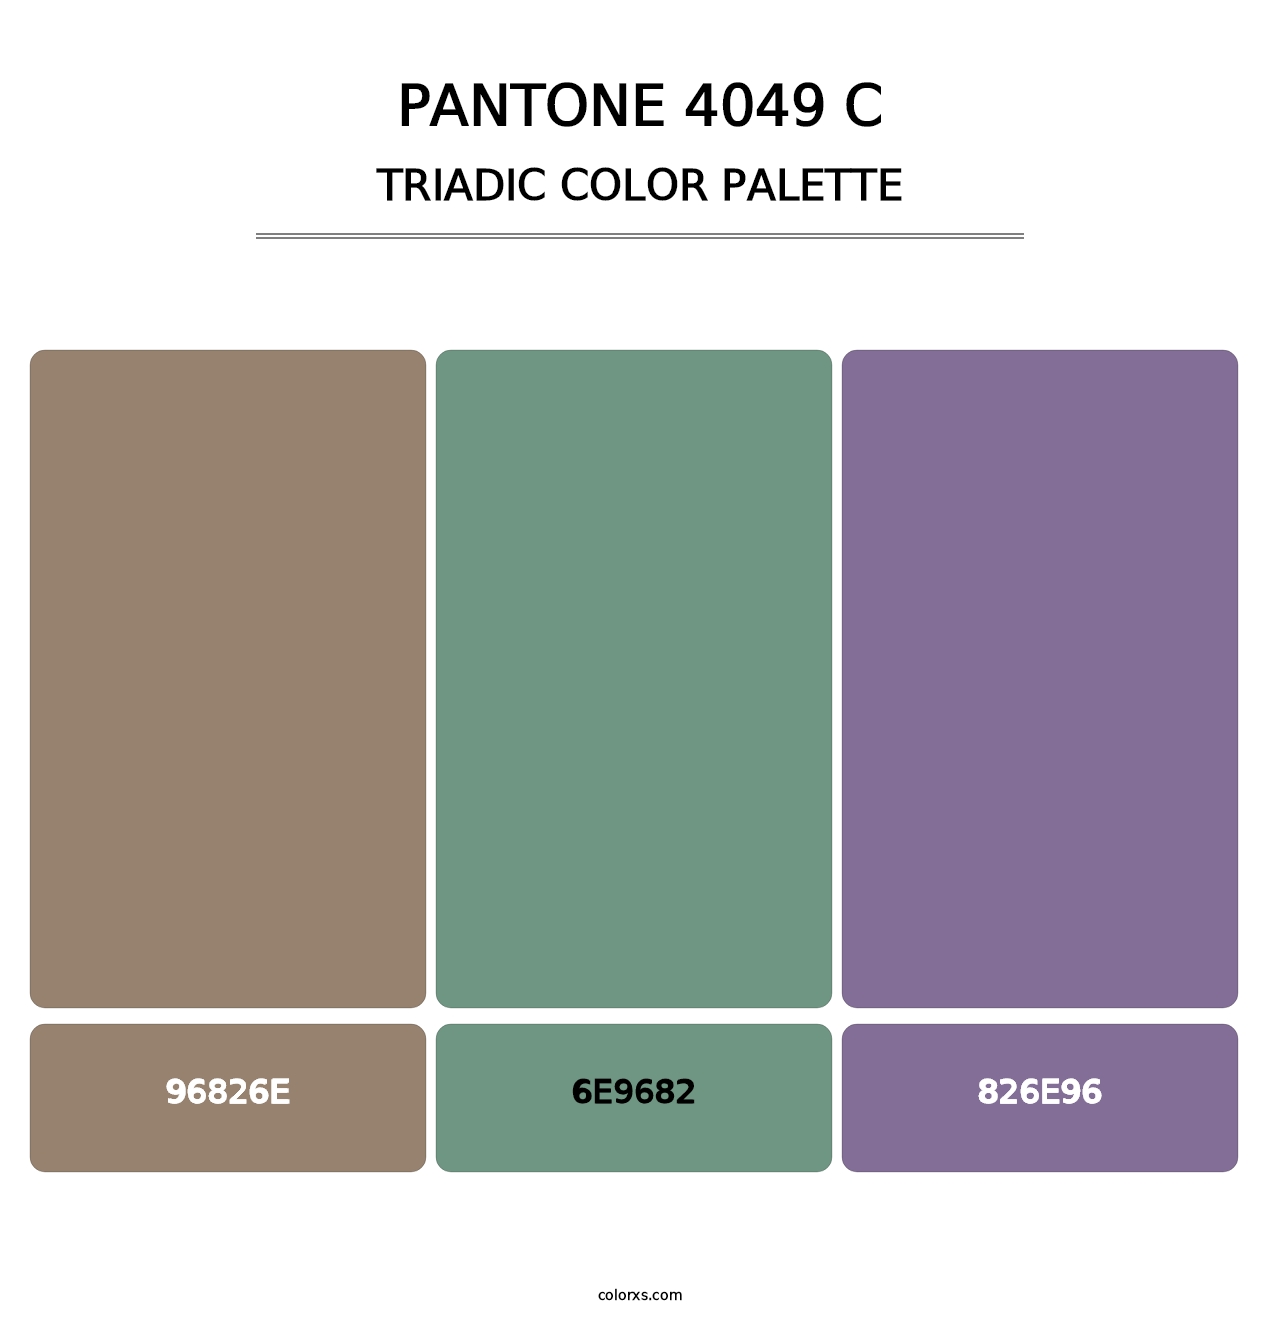 PANTONE 4049 C - Triadic Color Palette